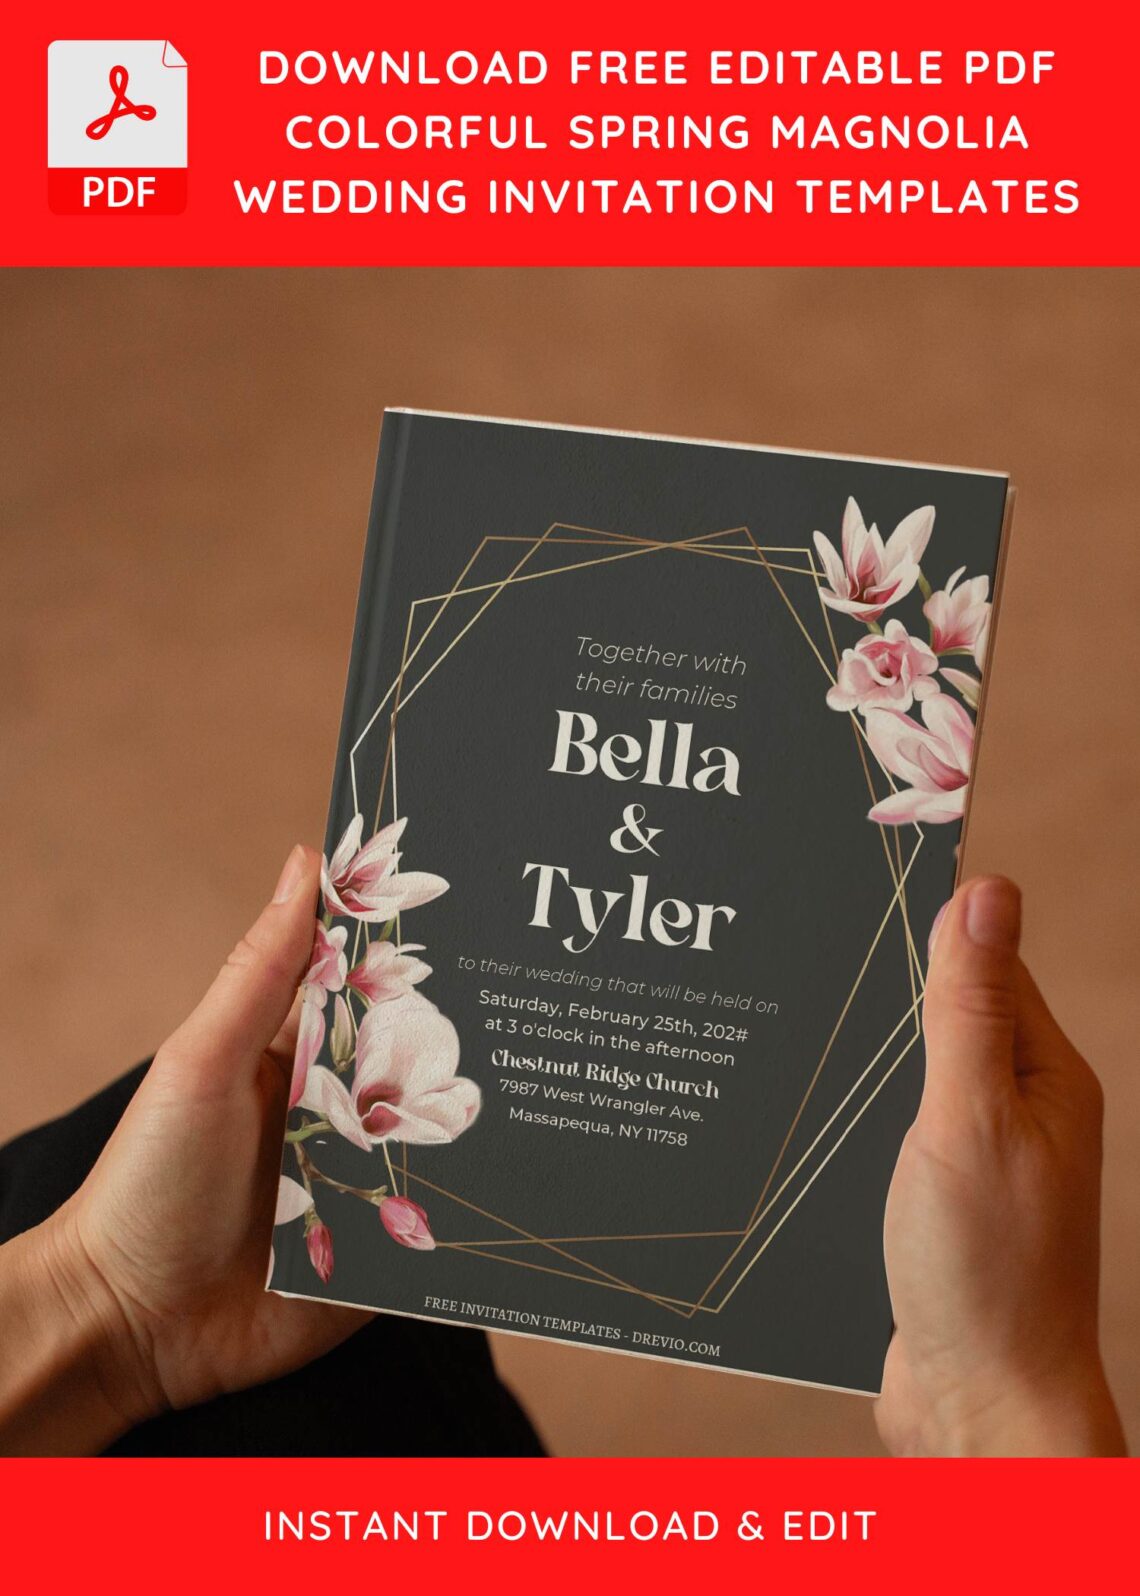 (Free Editable PDF) Stunning Geometric Magnolia Wedding Invitation Templates I